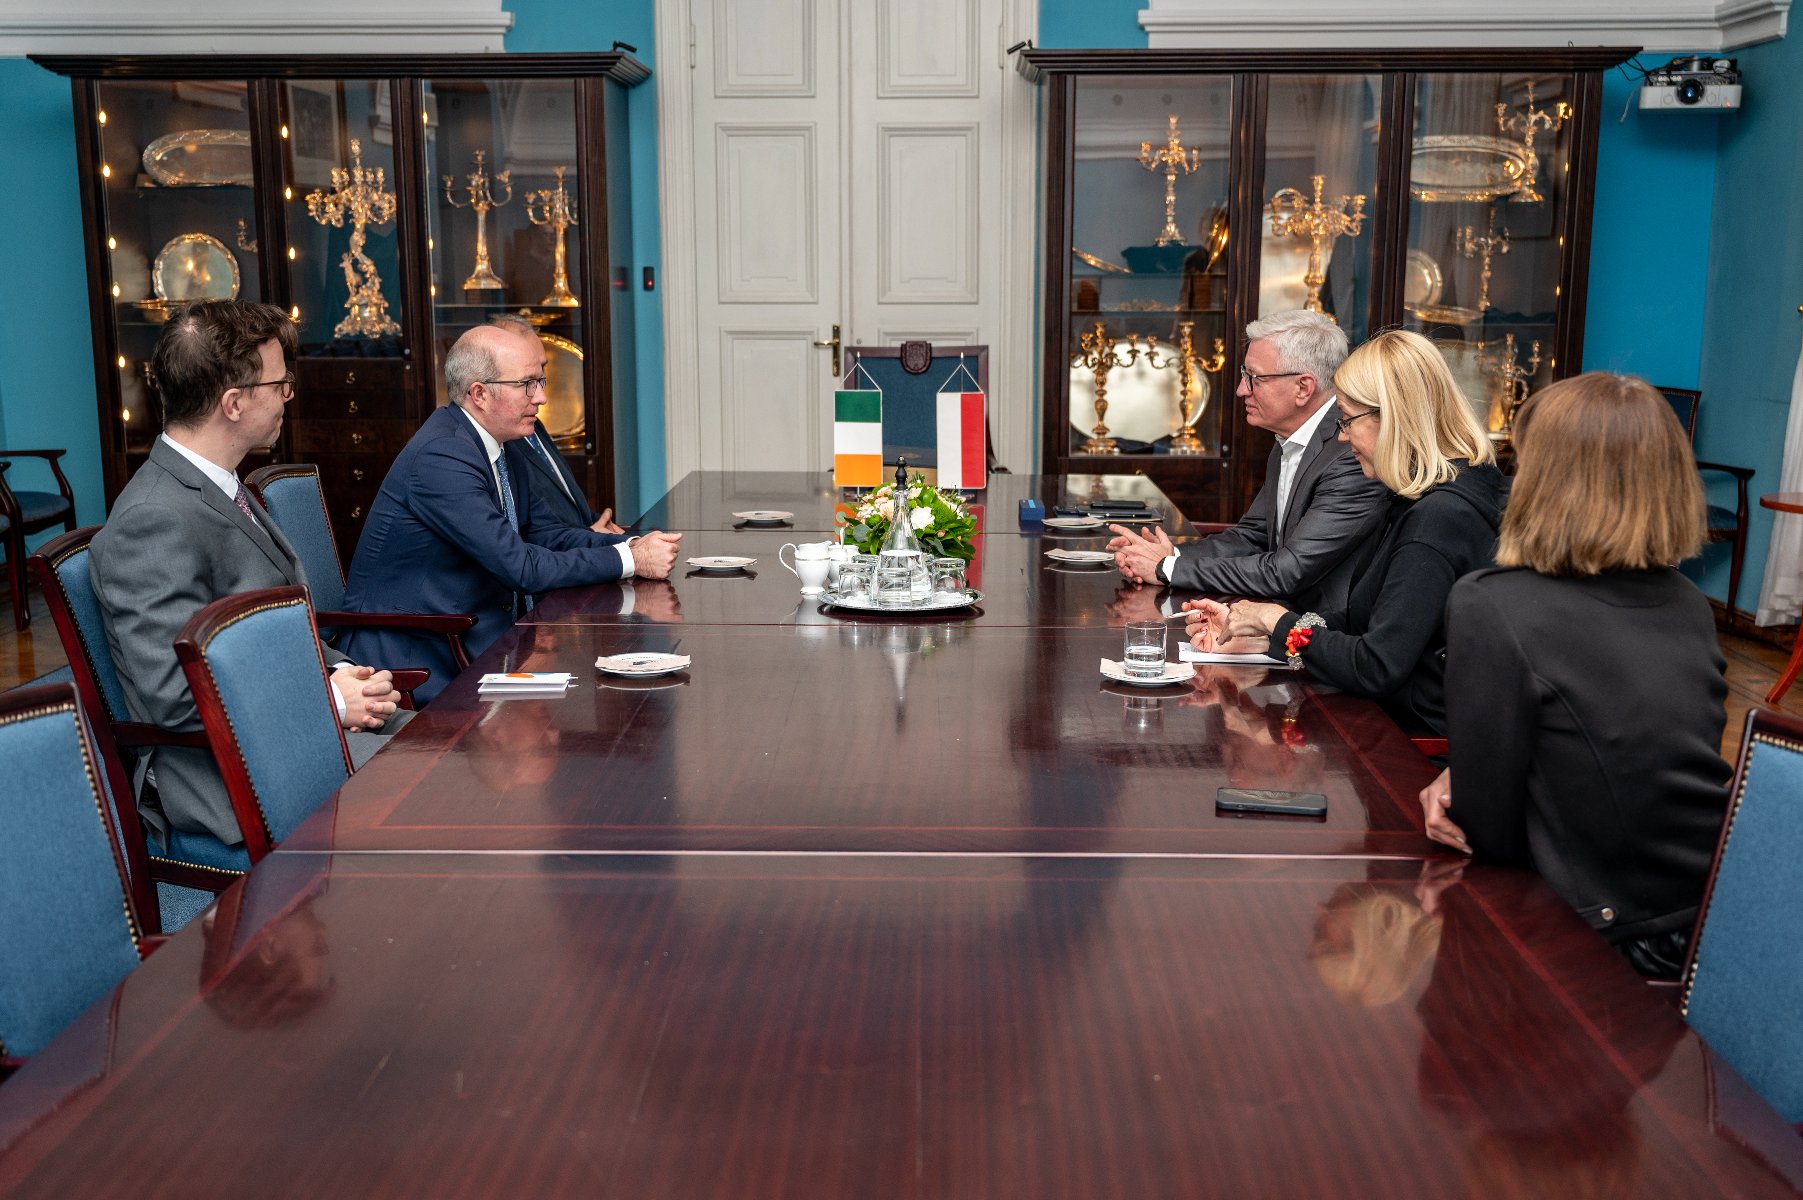 Na zdjęciu widać kilka osób siedzących przy długim stole, wśród nich są m.in. Patrick Haughey, ambasadora Irlandii w Polsce oraz Jacek Jaśkowiak, prezydent Poznania. - grafika artykułu